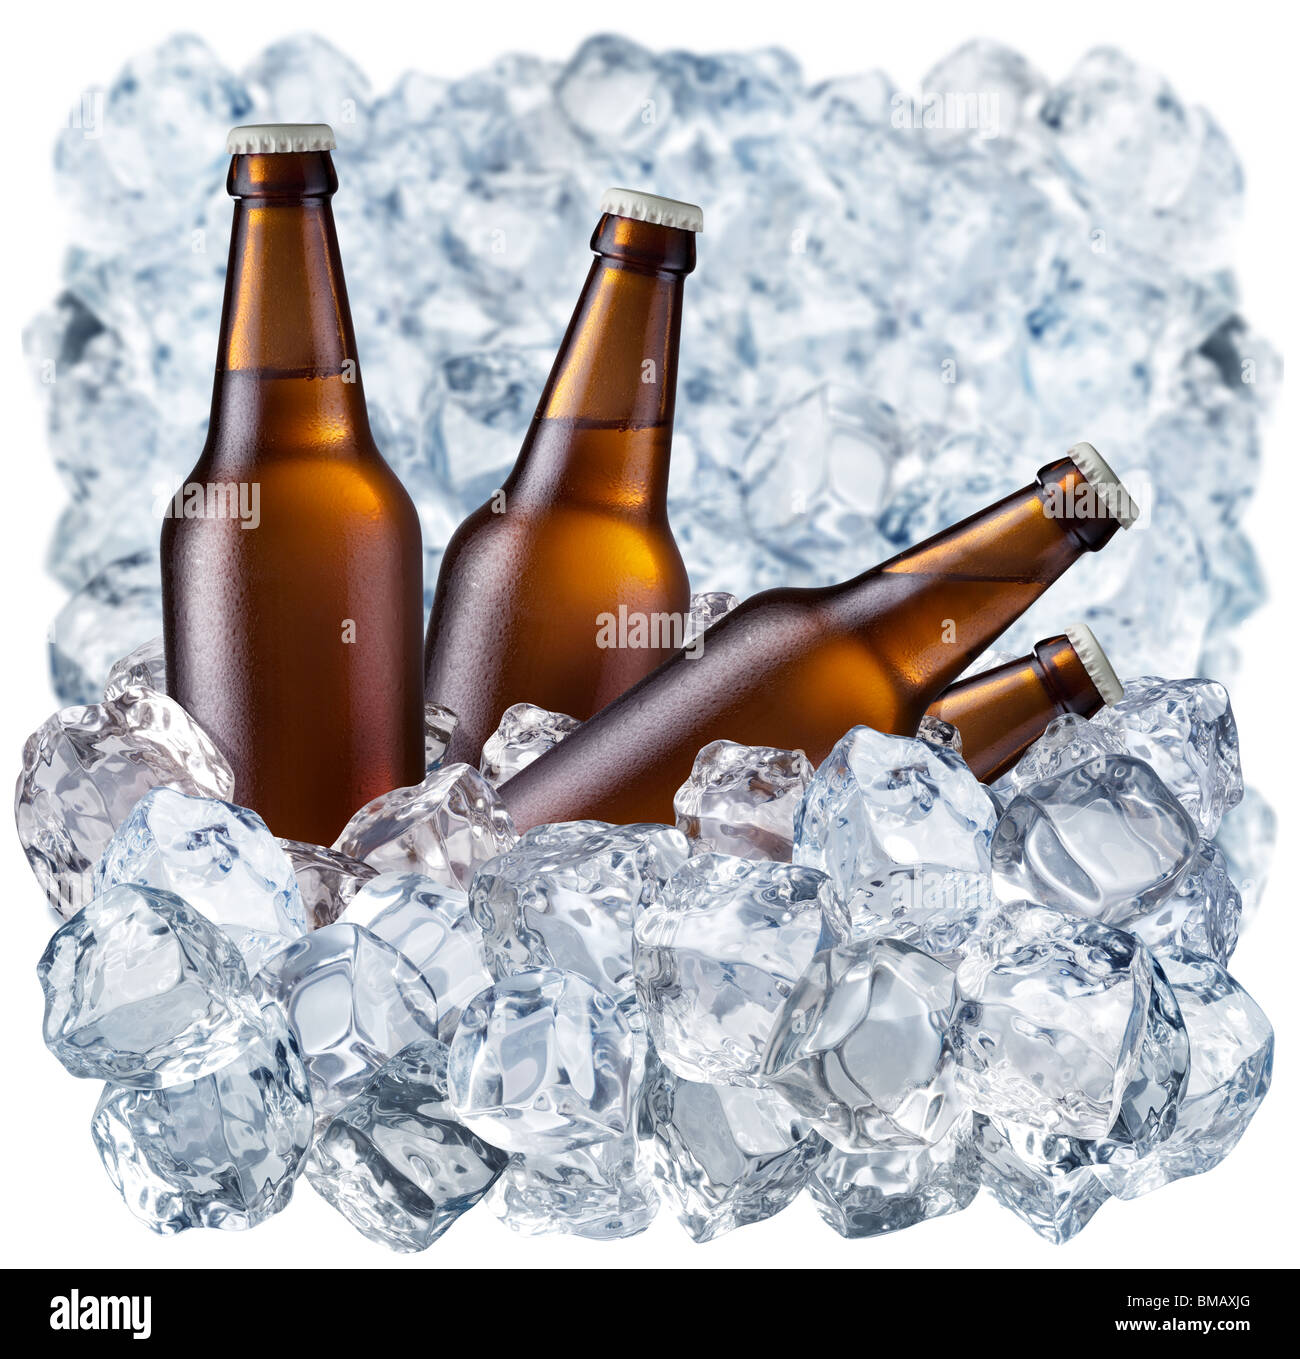 Bouteilles de bière sur la glace Banque D'Images